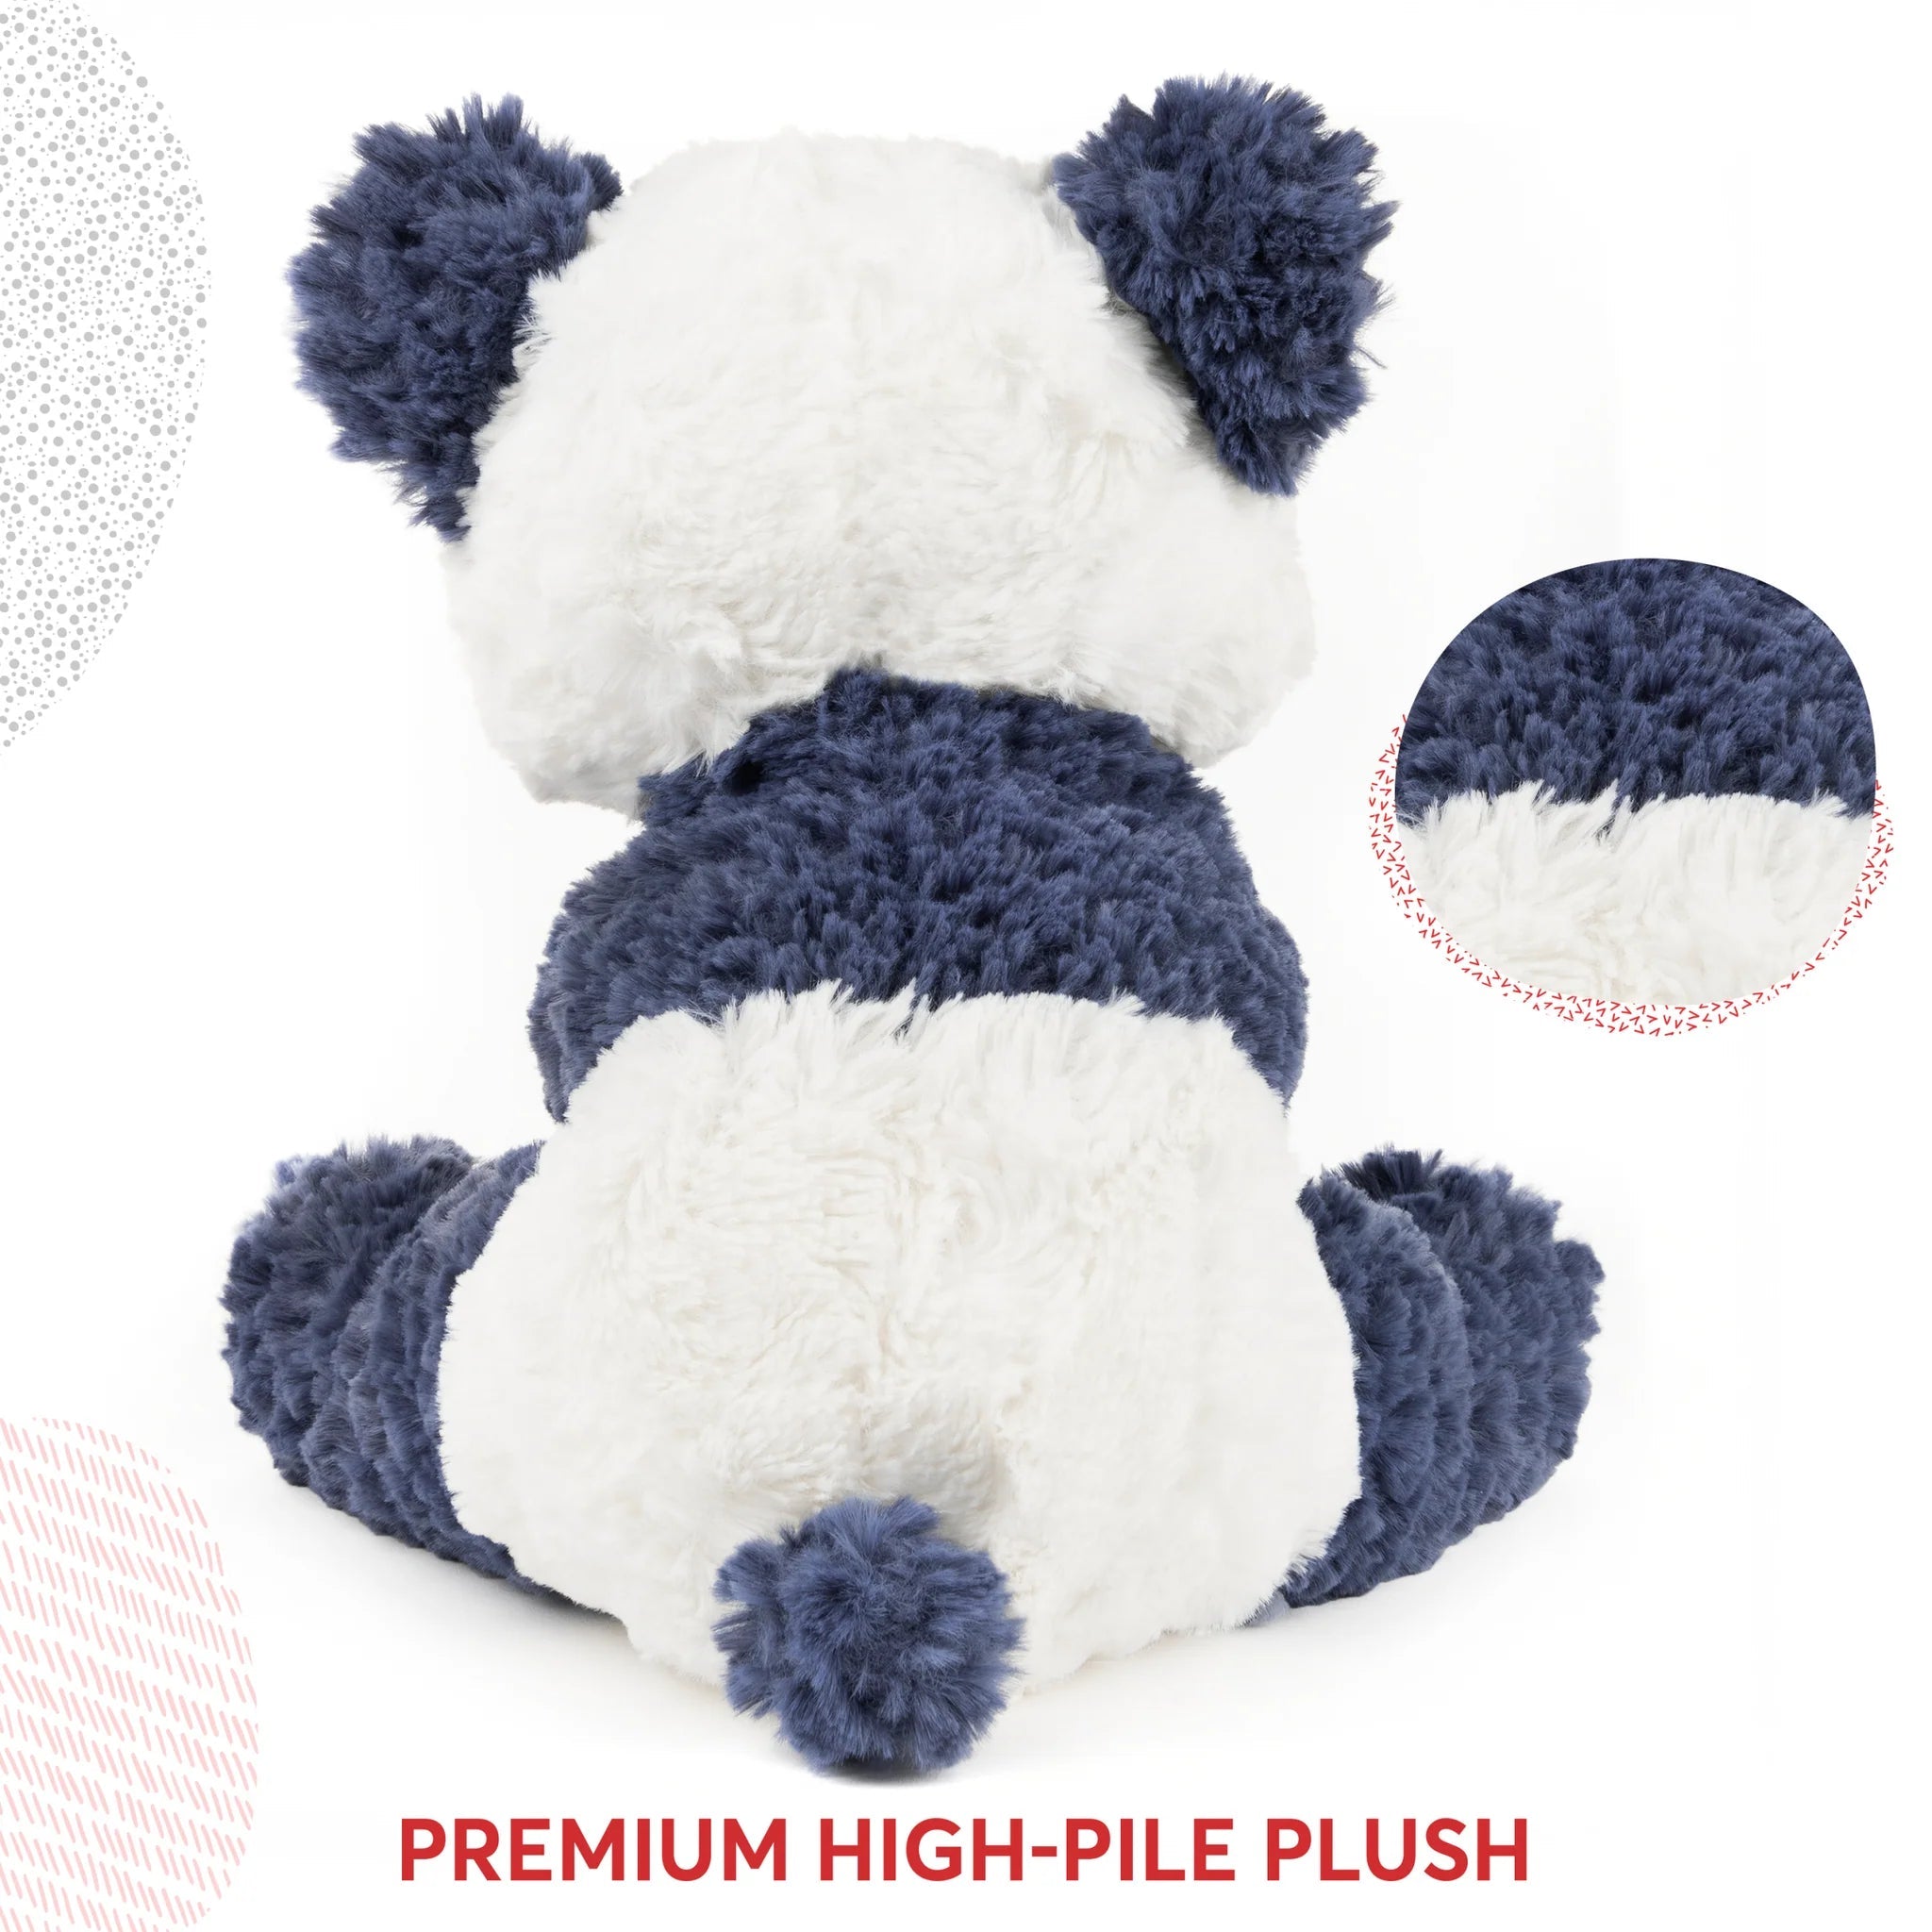 Gund Cozys Panda - 10"-GUND-Little Giant Kidz